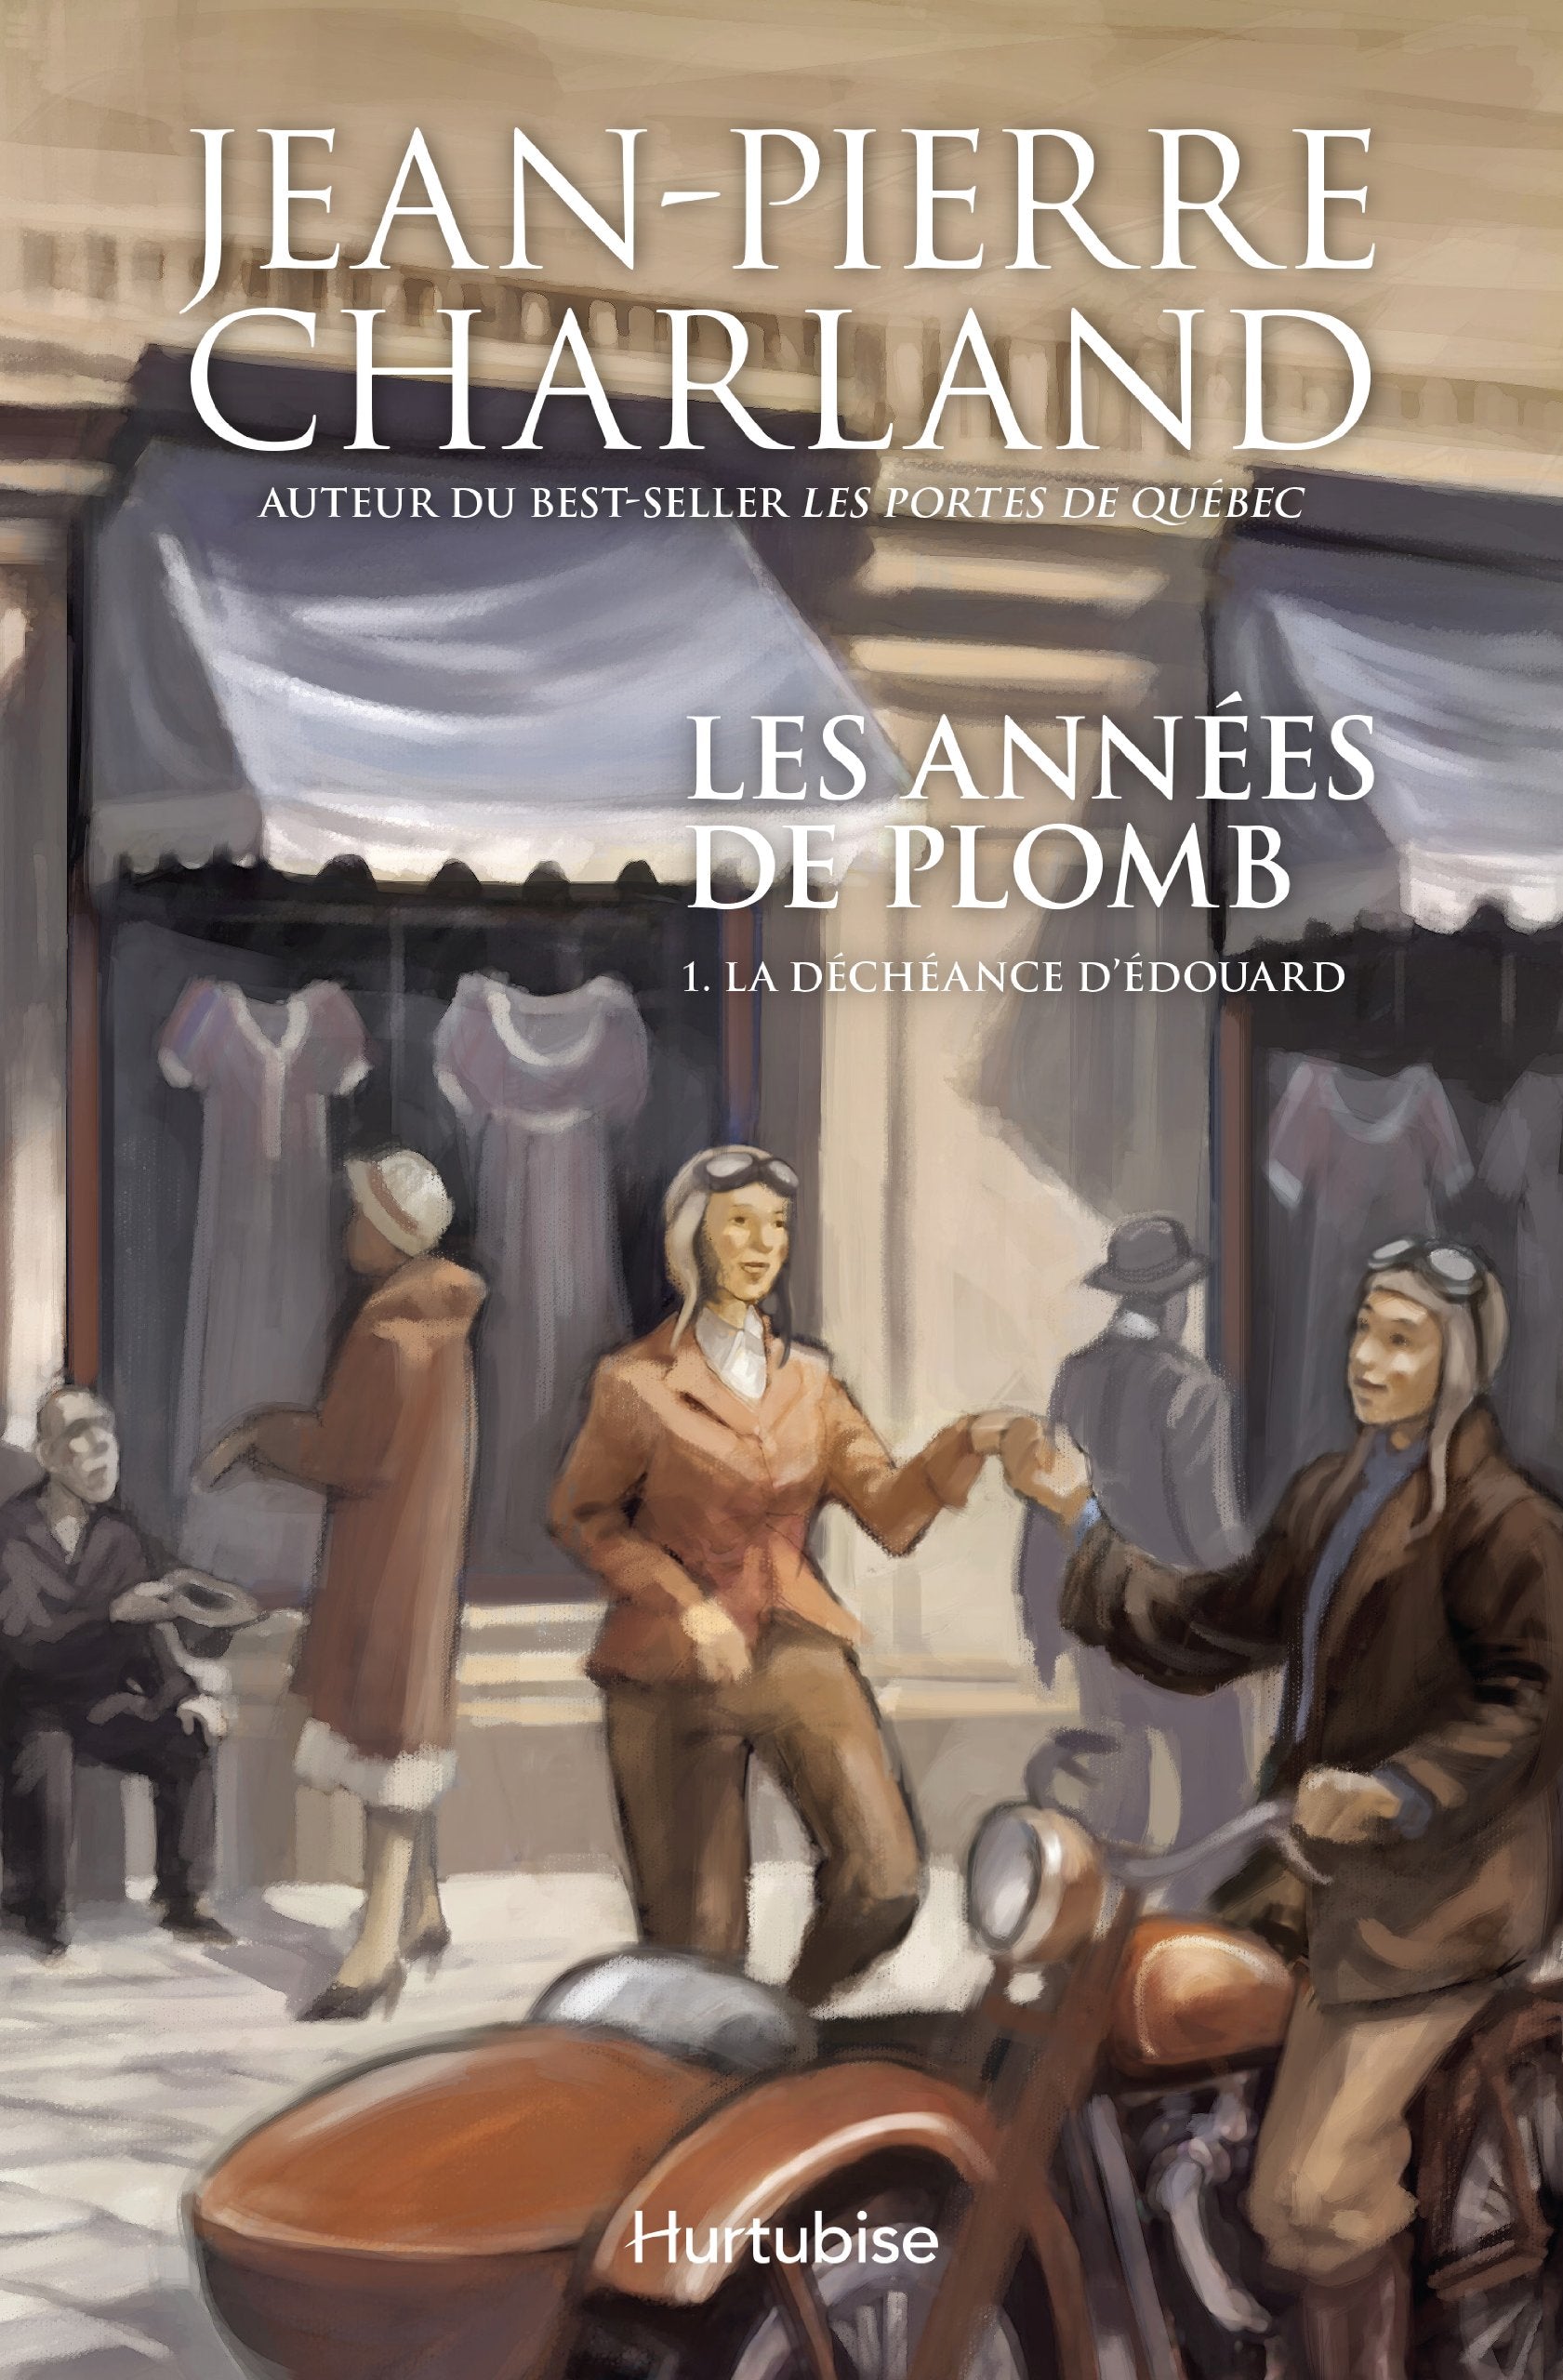 Les années de plomb # 1 : La déchéance d'Édouard - Jean-Pierre Charland